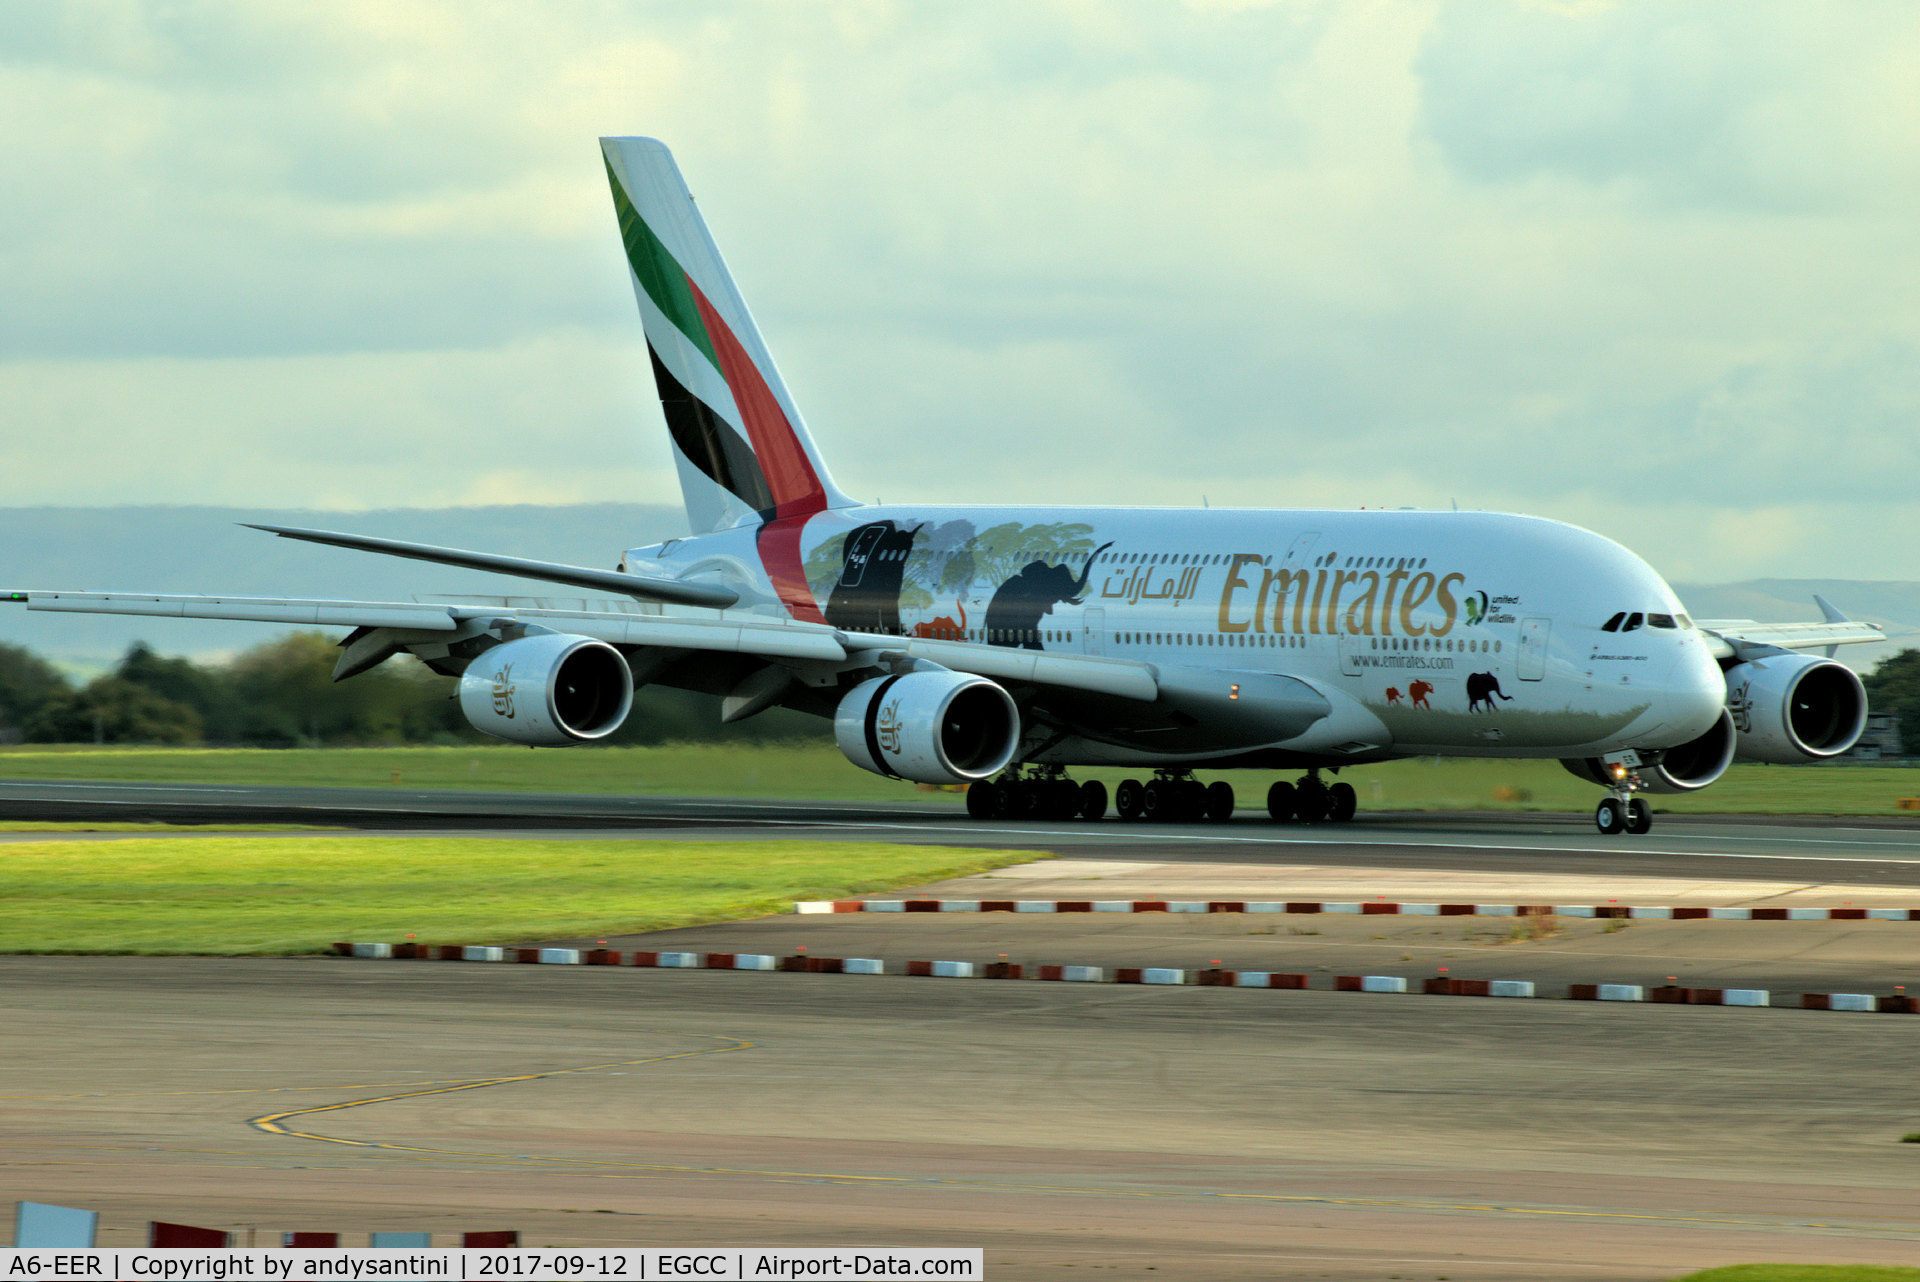 A6-EER, 2013 Airbus A380-861 C/N 139, just landed on runway [23R] @ man egcc uk.